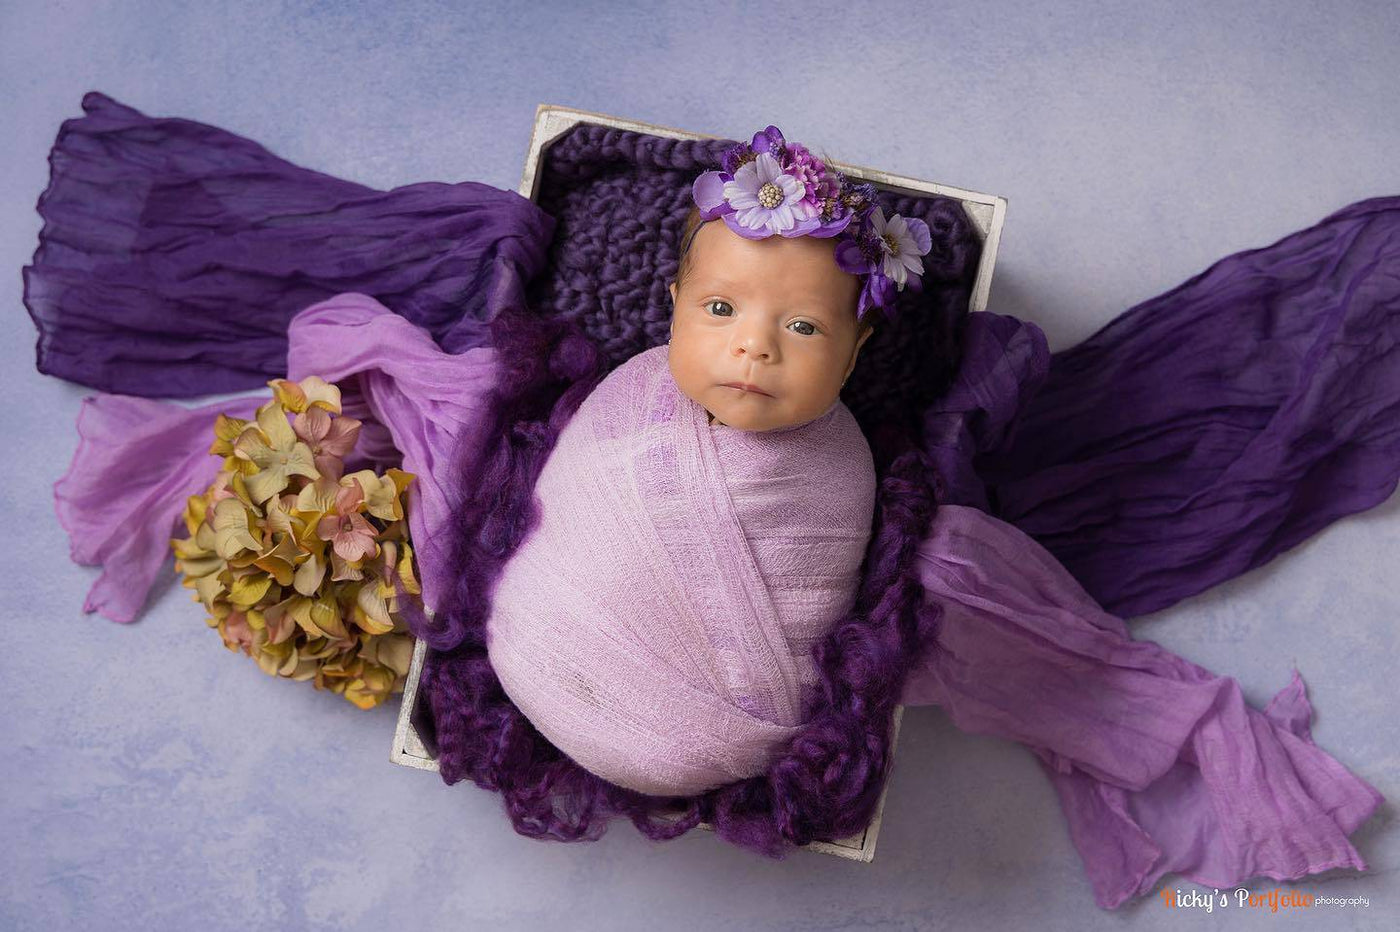 Purple Newborn Fluff Cloud Basket Filler Nest Stuffer - Beautiful Photo Props